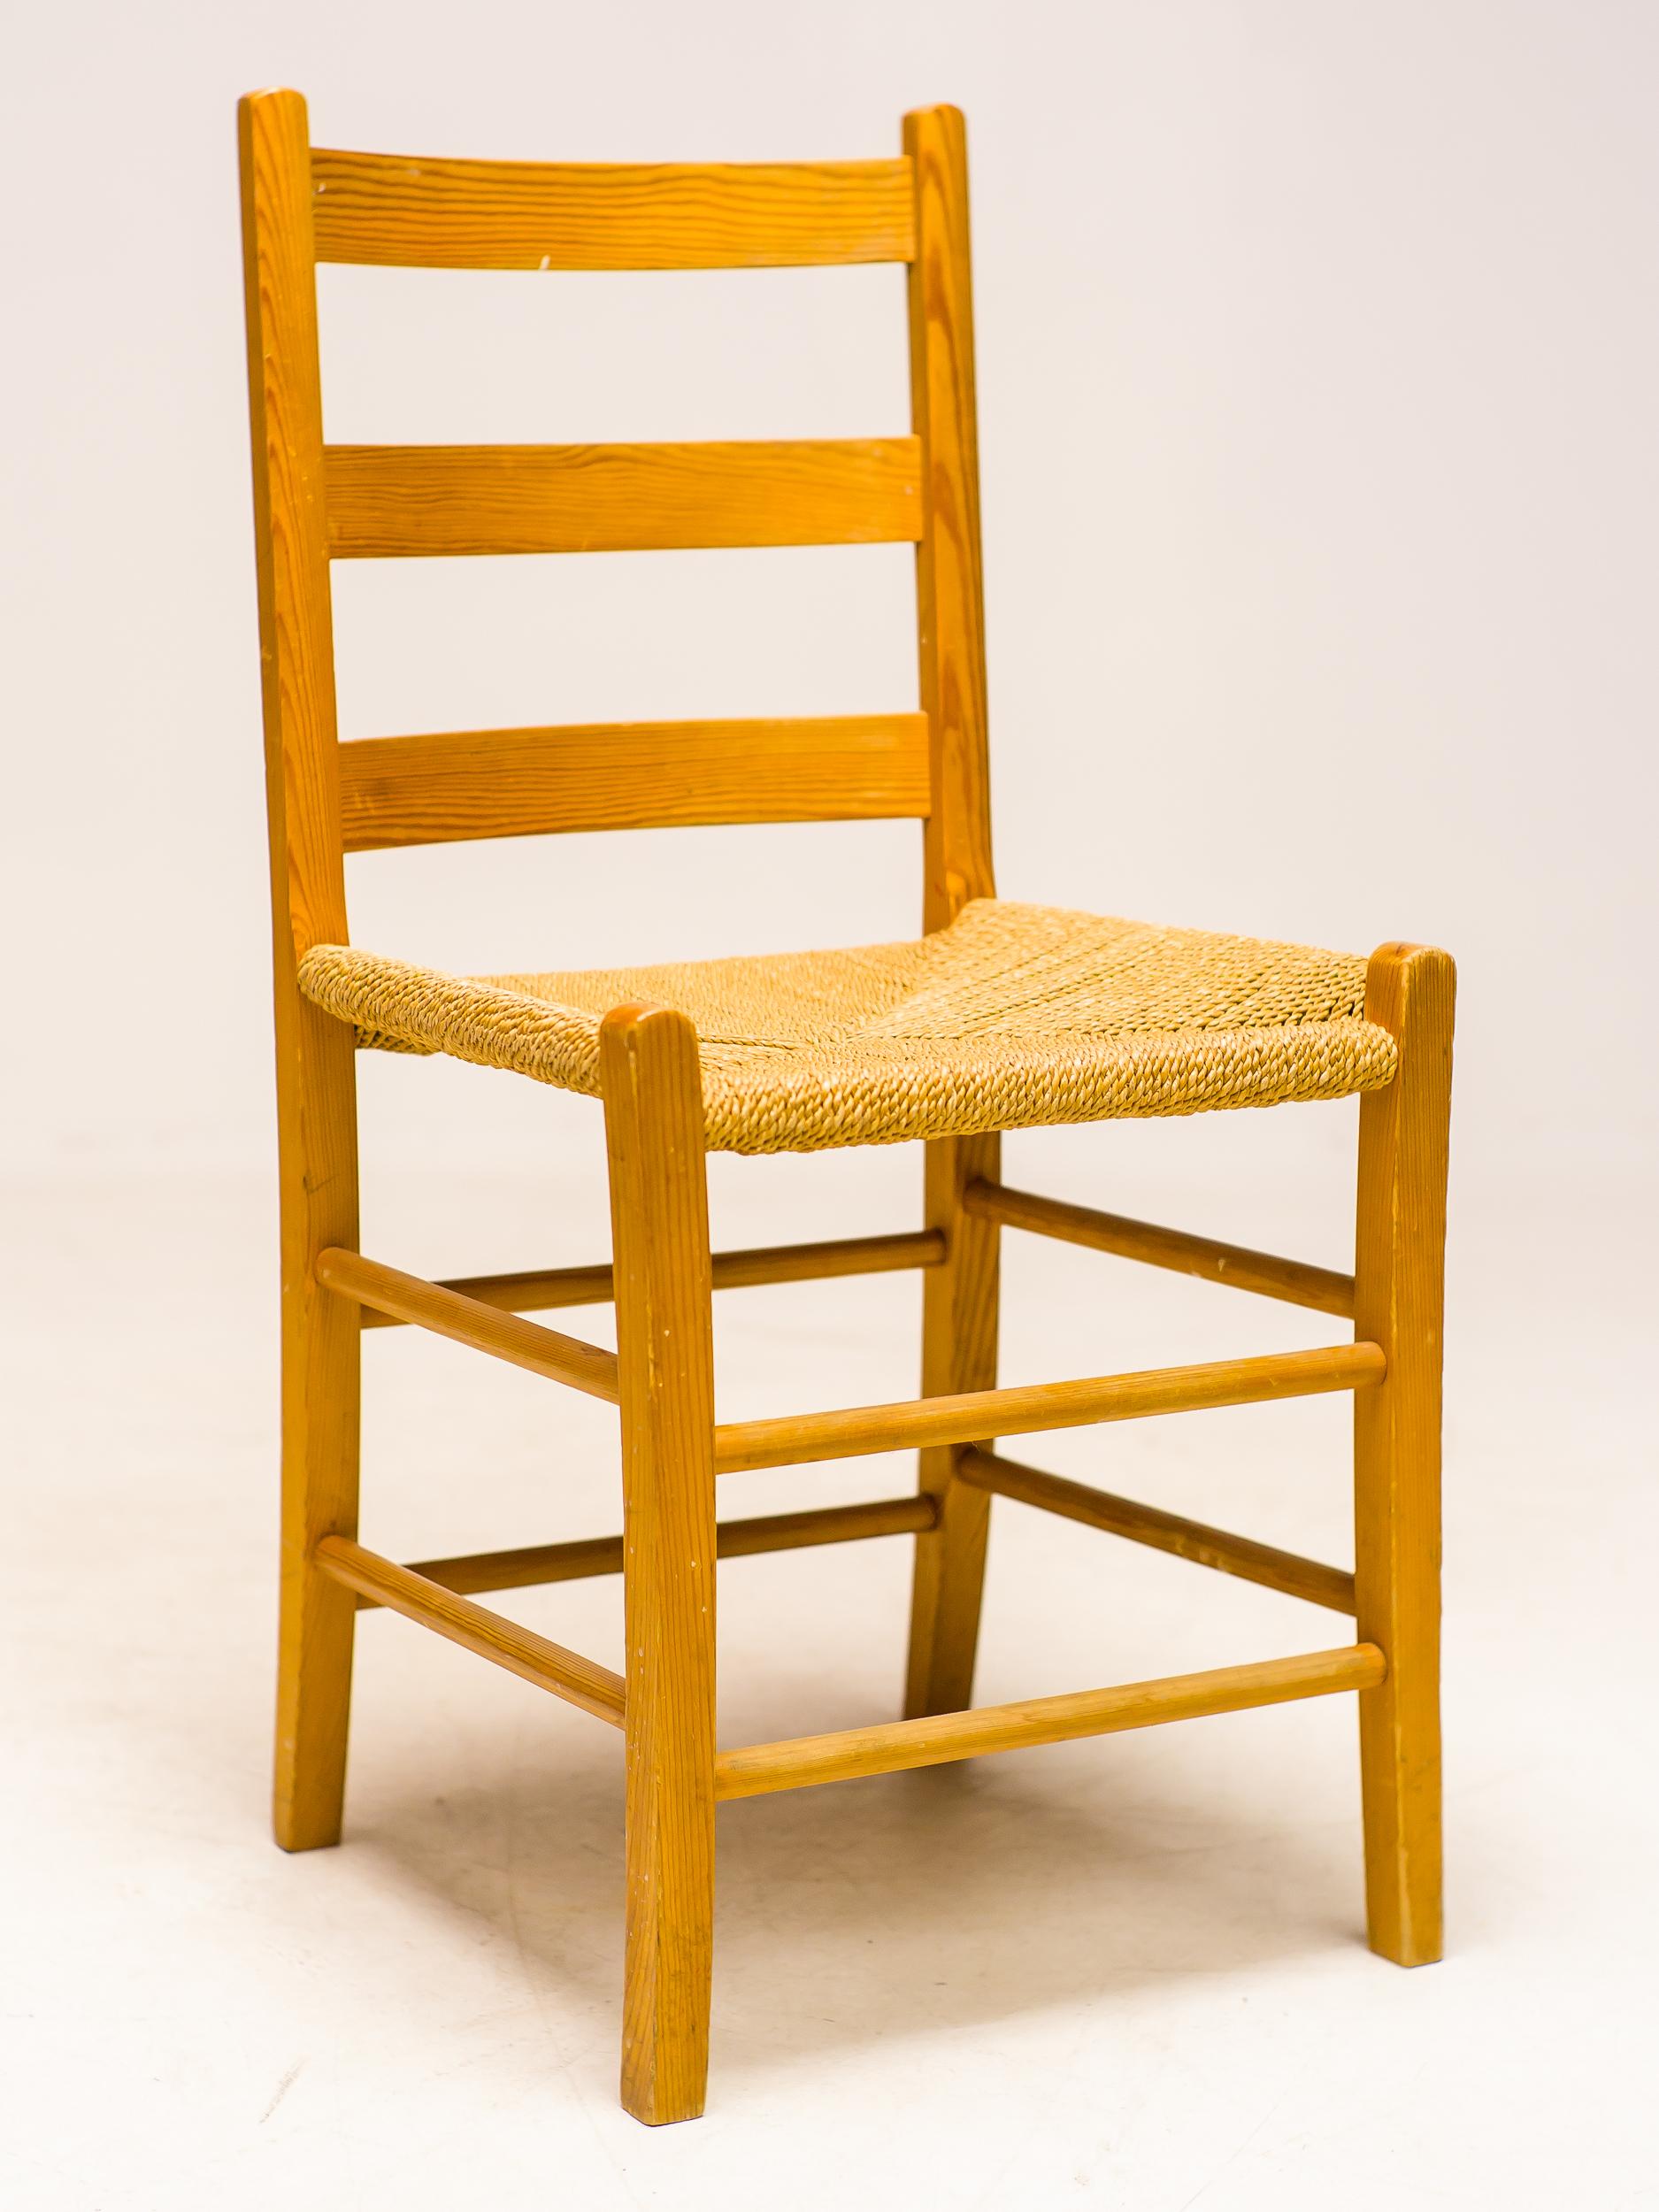 Toller Satz von 8 schwedischen Esszimmerstühlen in Oregon Pine mit gedrehten Seegrassitzen in schönem Vintage-Zustand.

Das moderne Design der Jahrhundertmitte entstand in der Mitte des 20. Jahrhunderts, etwa zwischen den 1930er und 1960er Jahren,